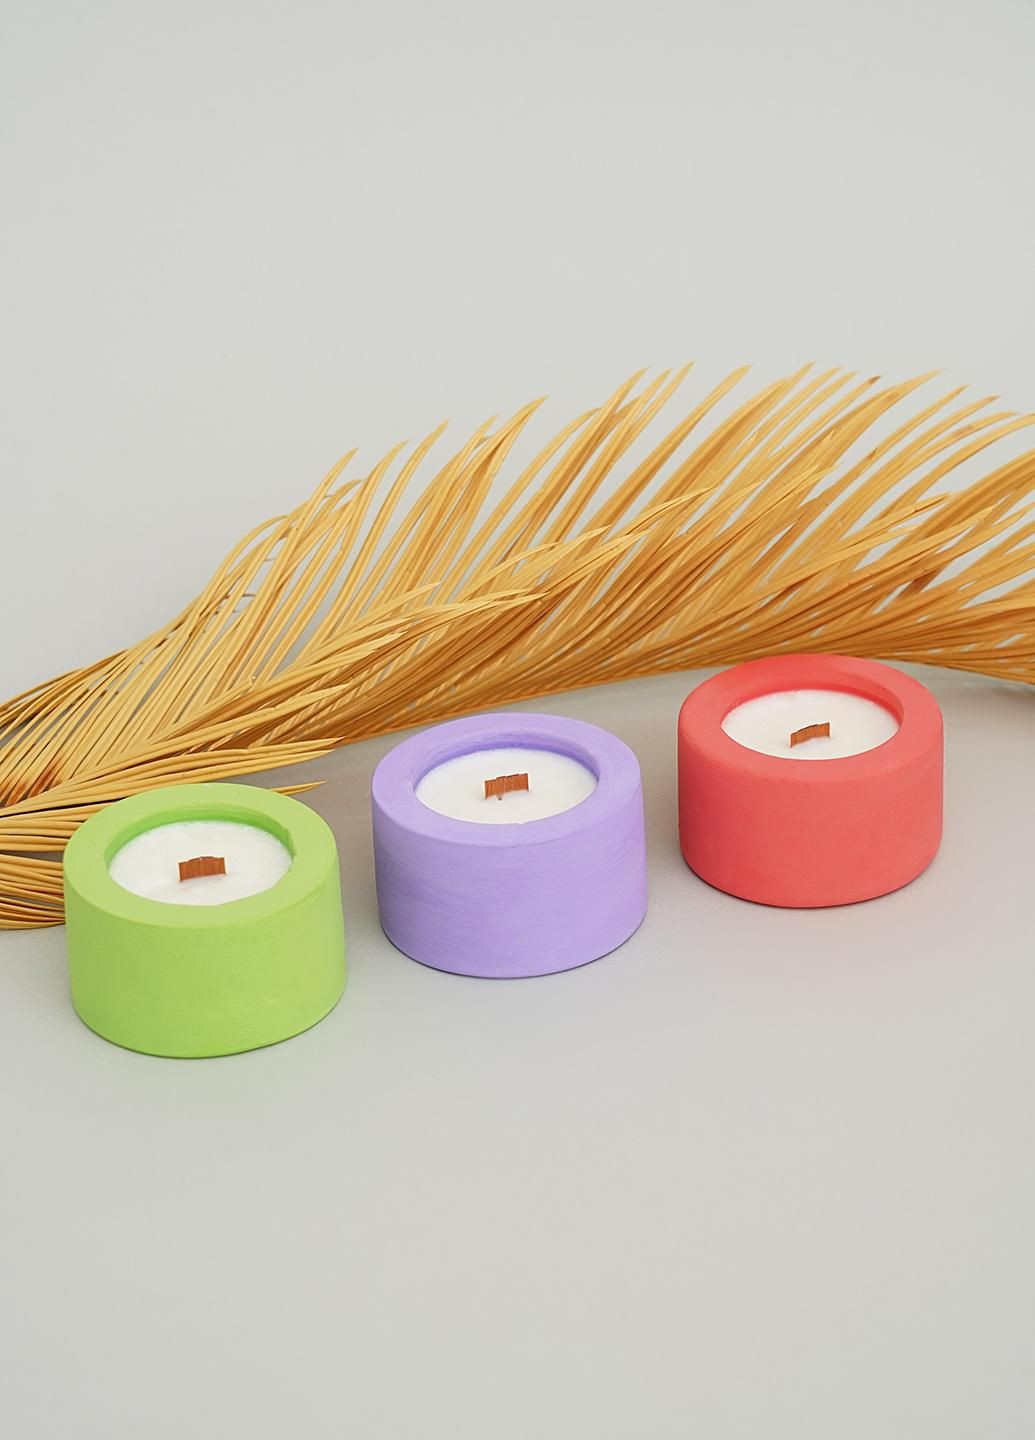 Подарочный набор ЭКО свечей, аромат Египетский (парфюмерная композиция) Svich Shop 3 (282720106)